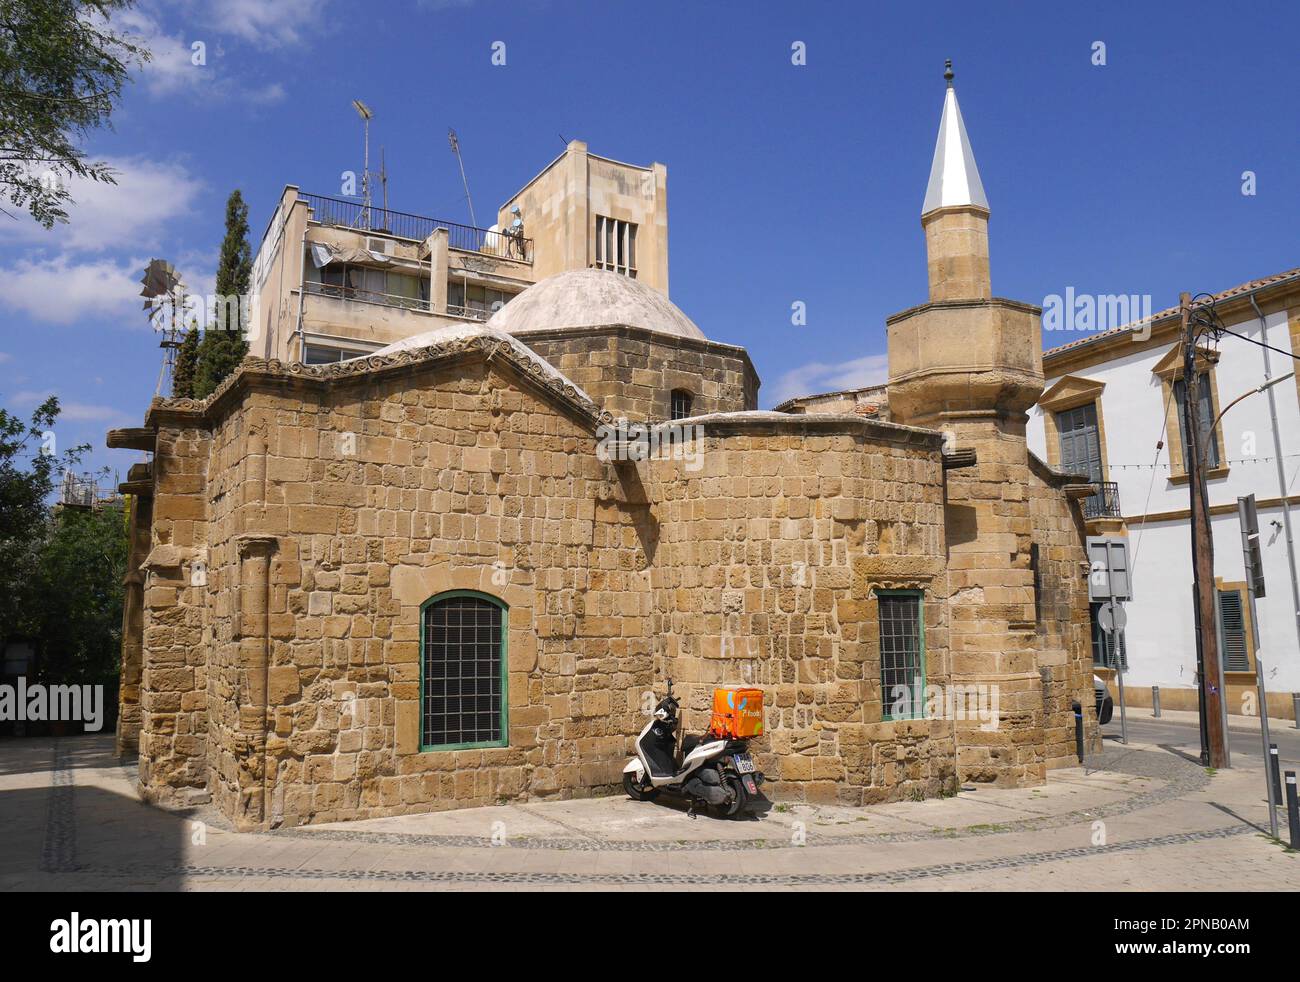 Araplar Mosque, Araplar Camii, South Nicosia, Republic of Cyprus Stock Photo